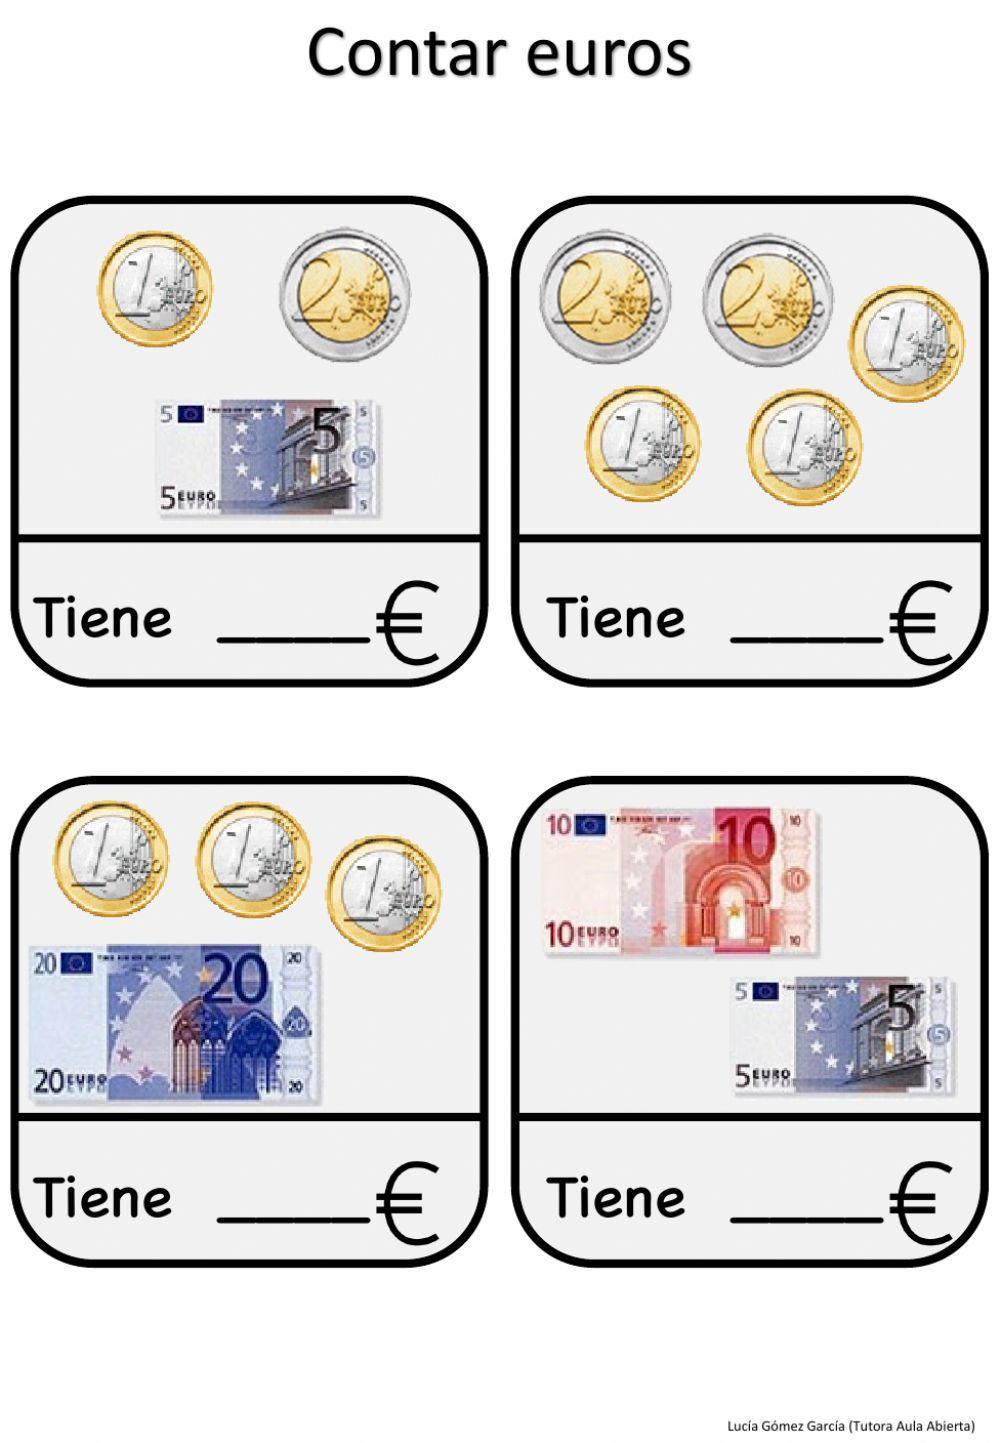 Contar euros